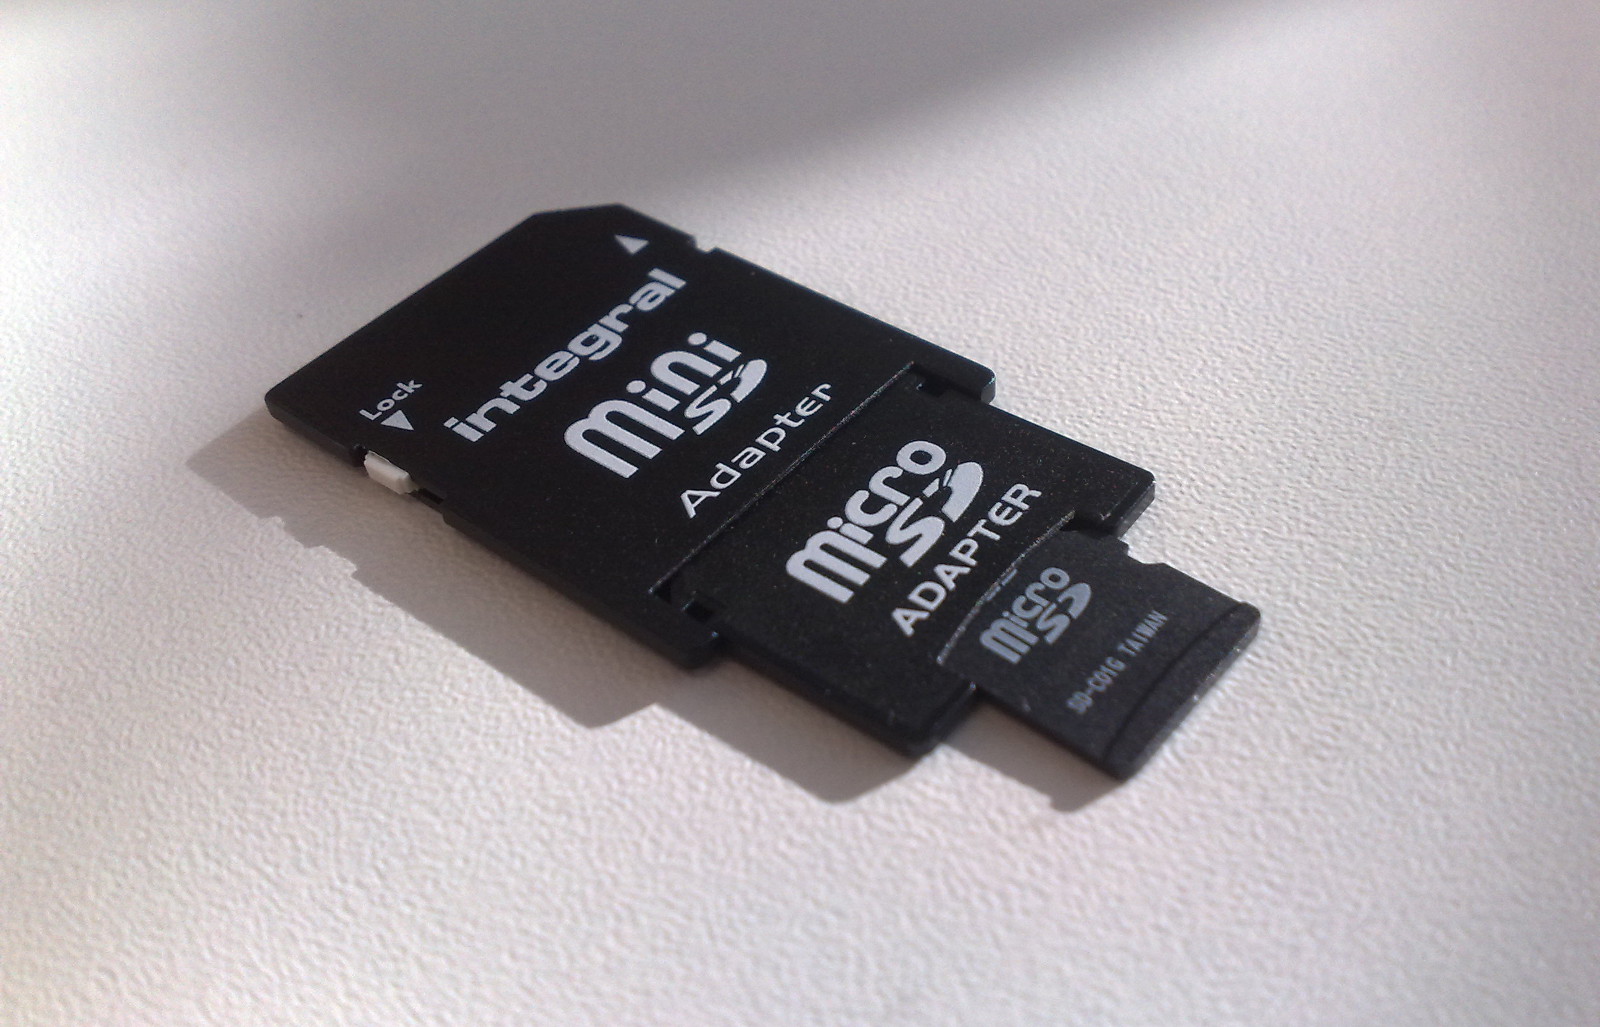 Samsung ogłasza karty microSD o pojemność 256 GB